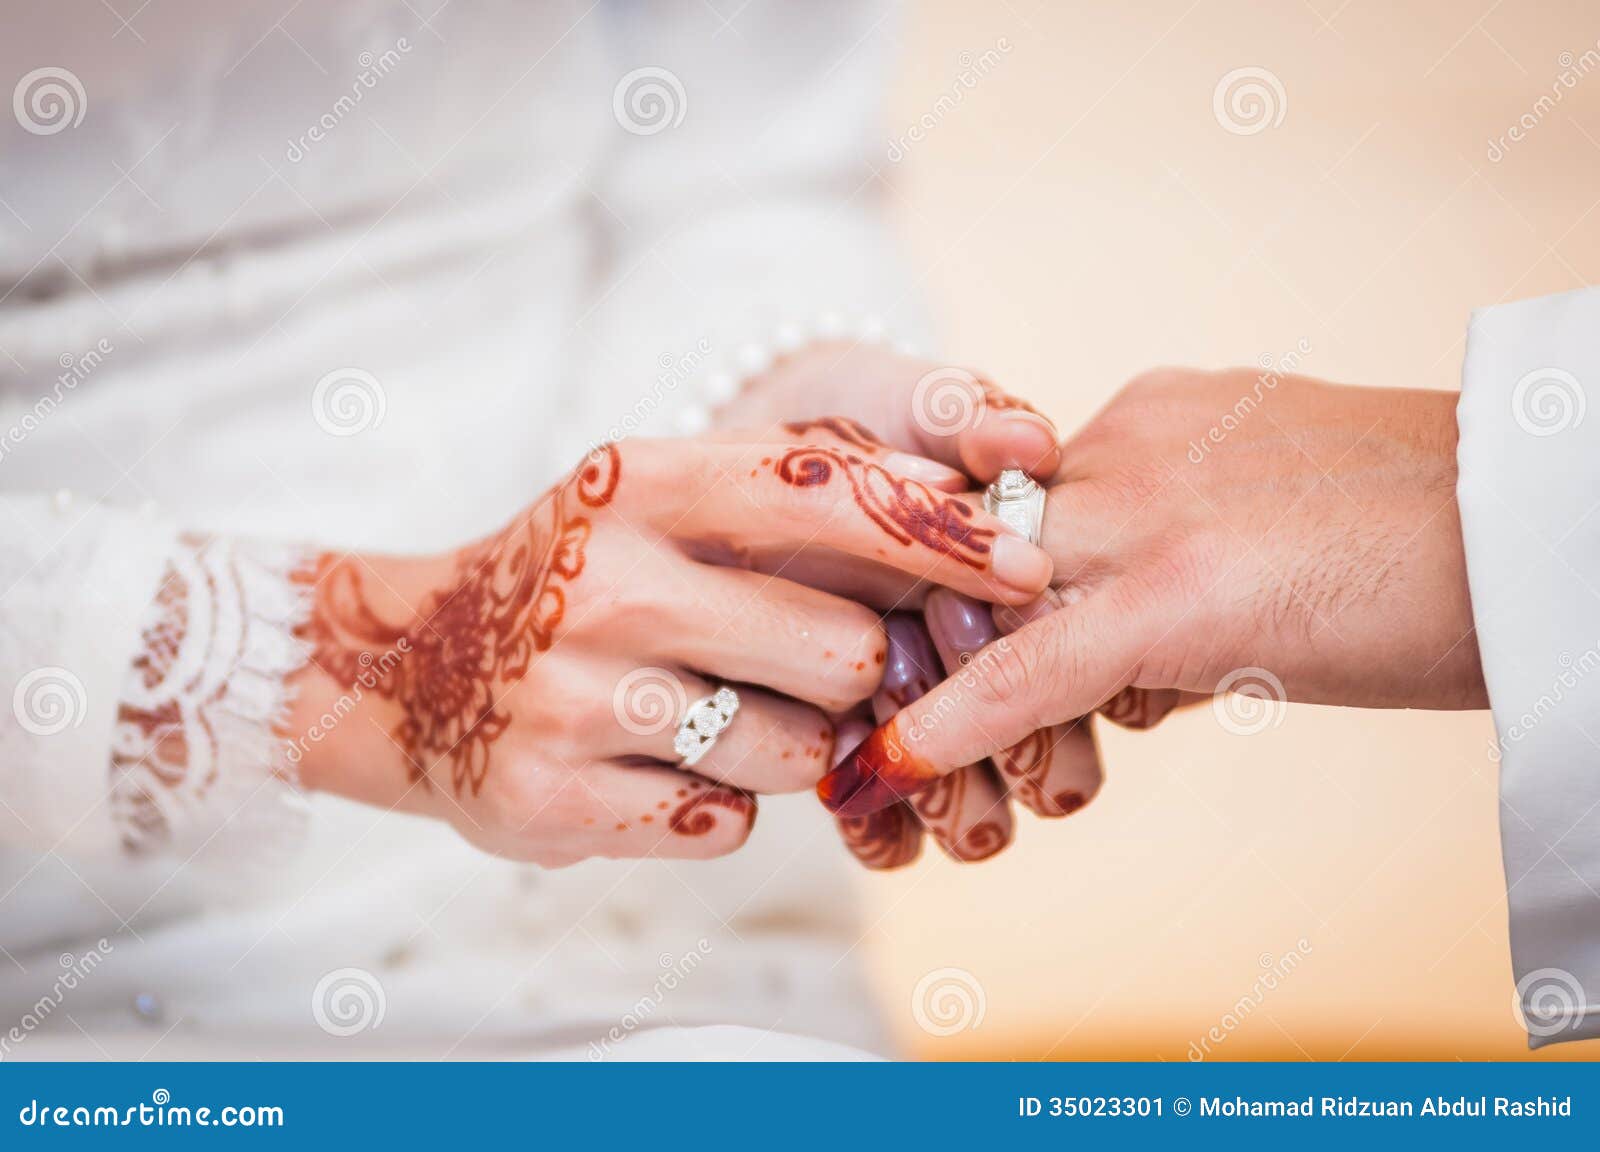 Groom wedding ring finger